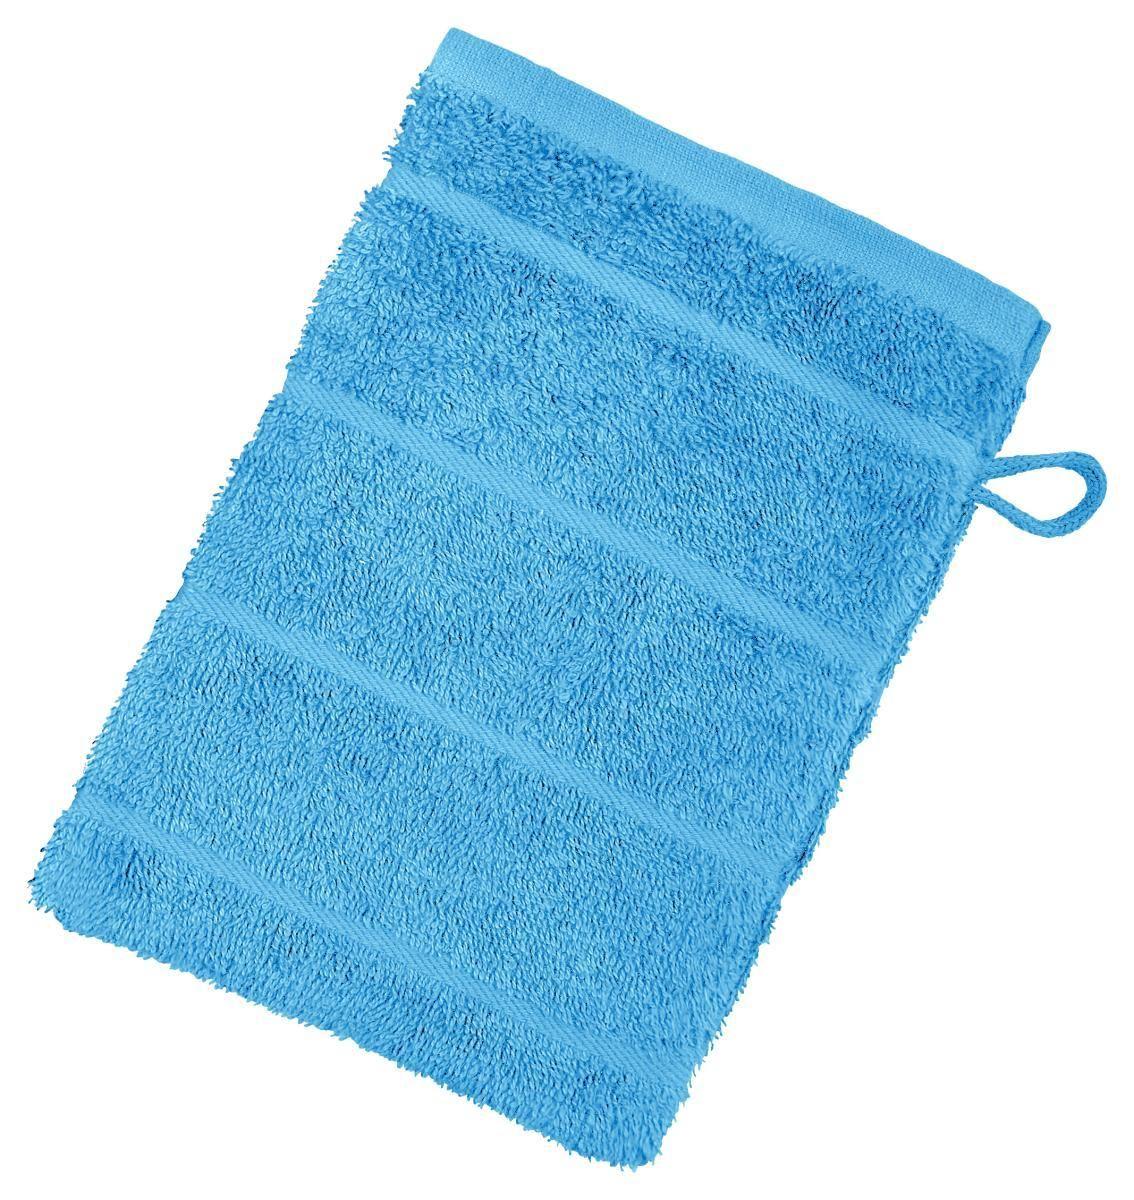 Waschlappen Liliane - Blau, KONVENTIONELL, Textil (16/21cm) - Ondega